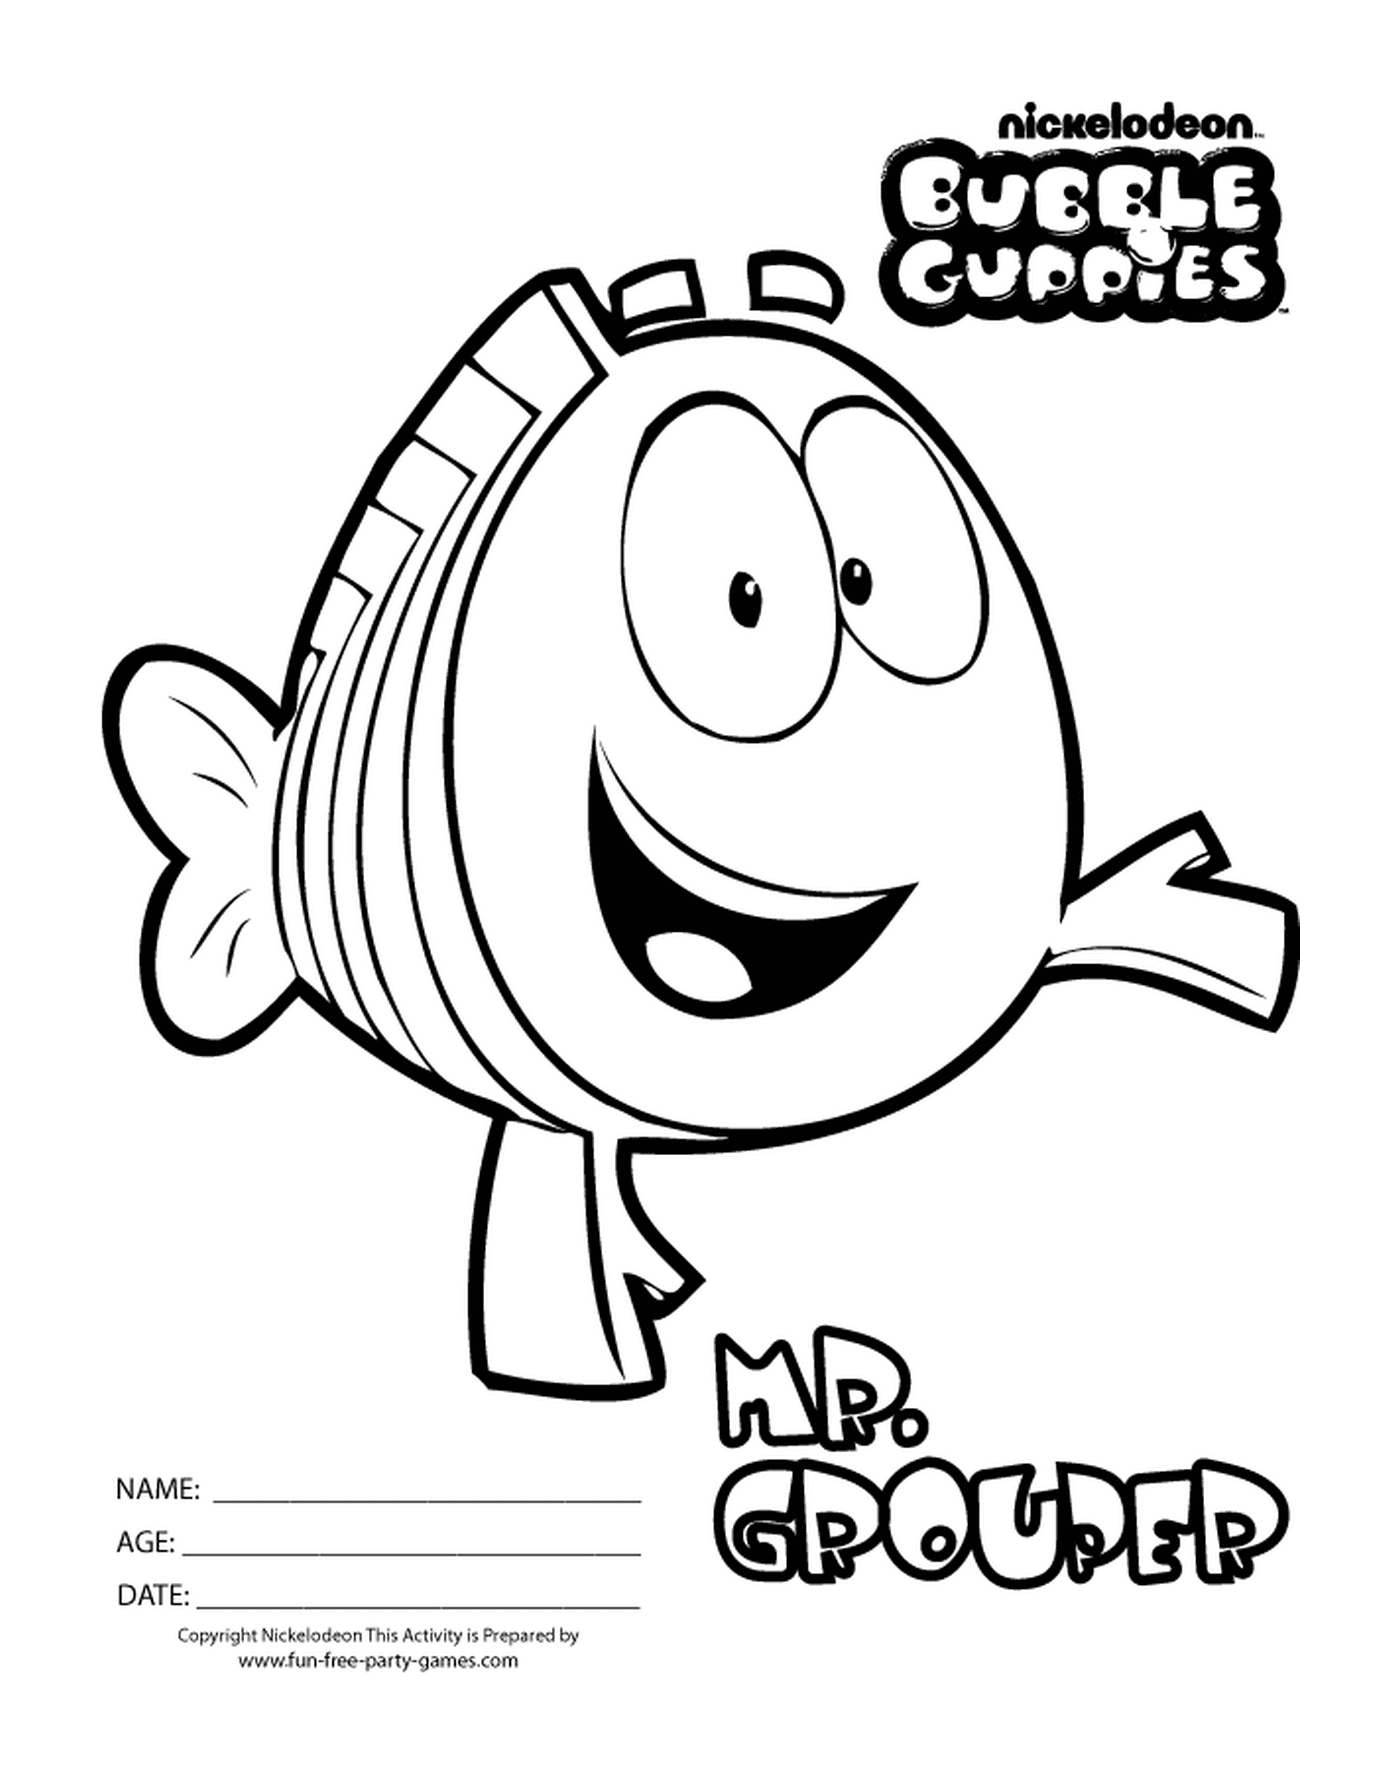  Herr Grouper des Bubble Guppies, ein animierter Fisch 